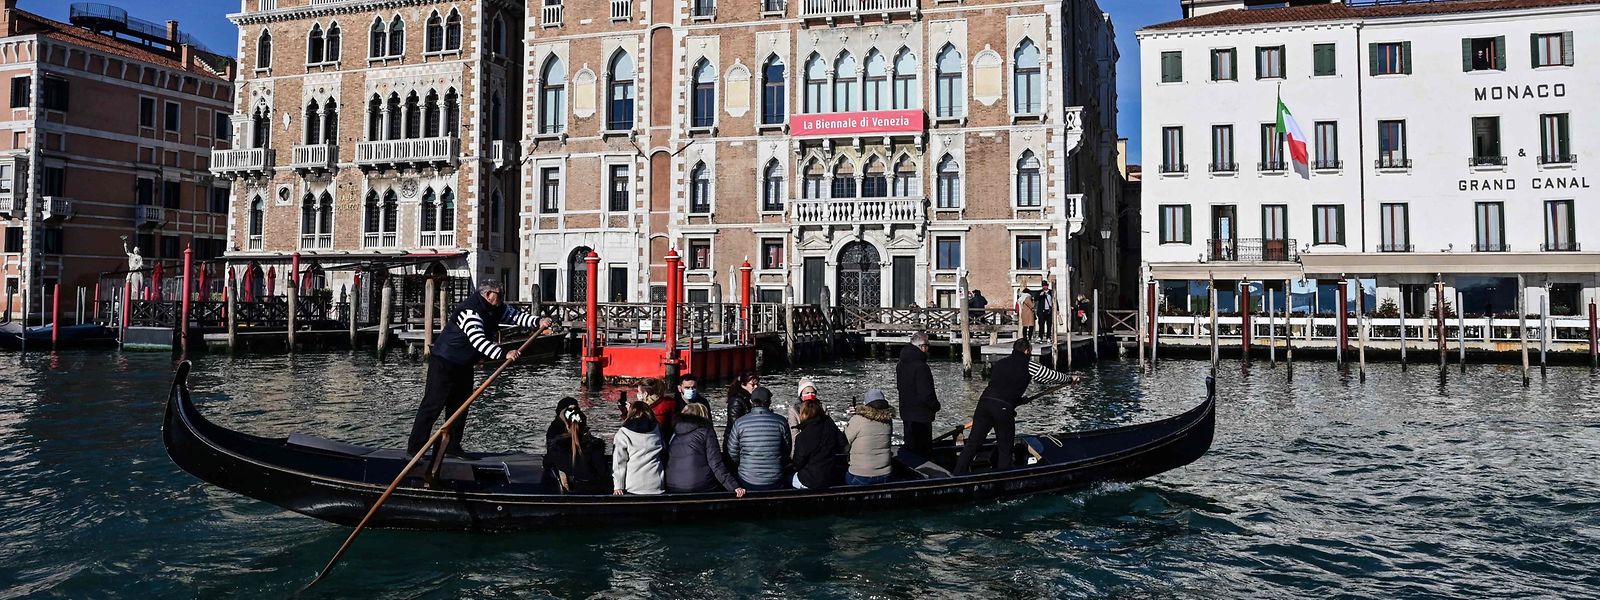 Die Zeiten, als corona-bedingt kaum Touristen zu den einstigen Hotspots wie Venedig gekommen sind, sind vorbei.